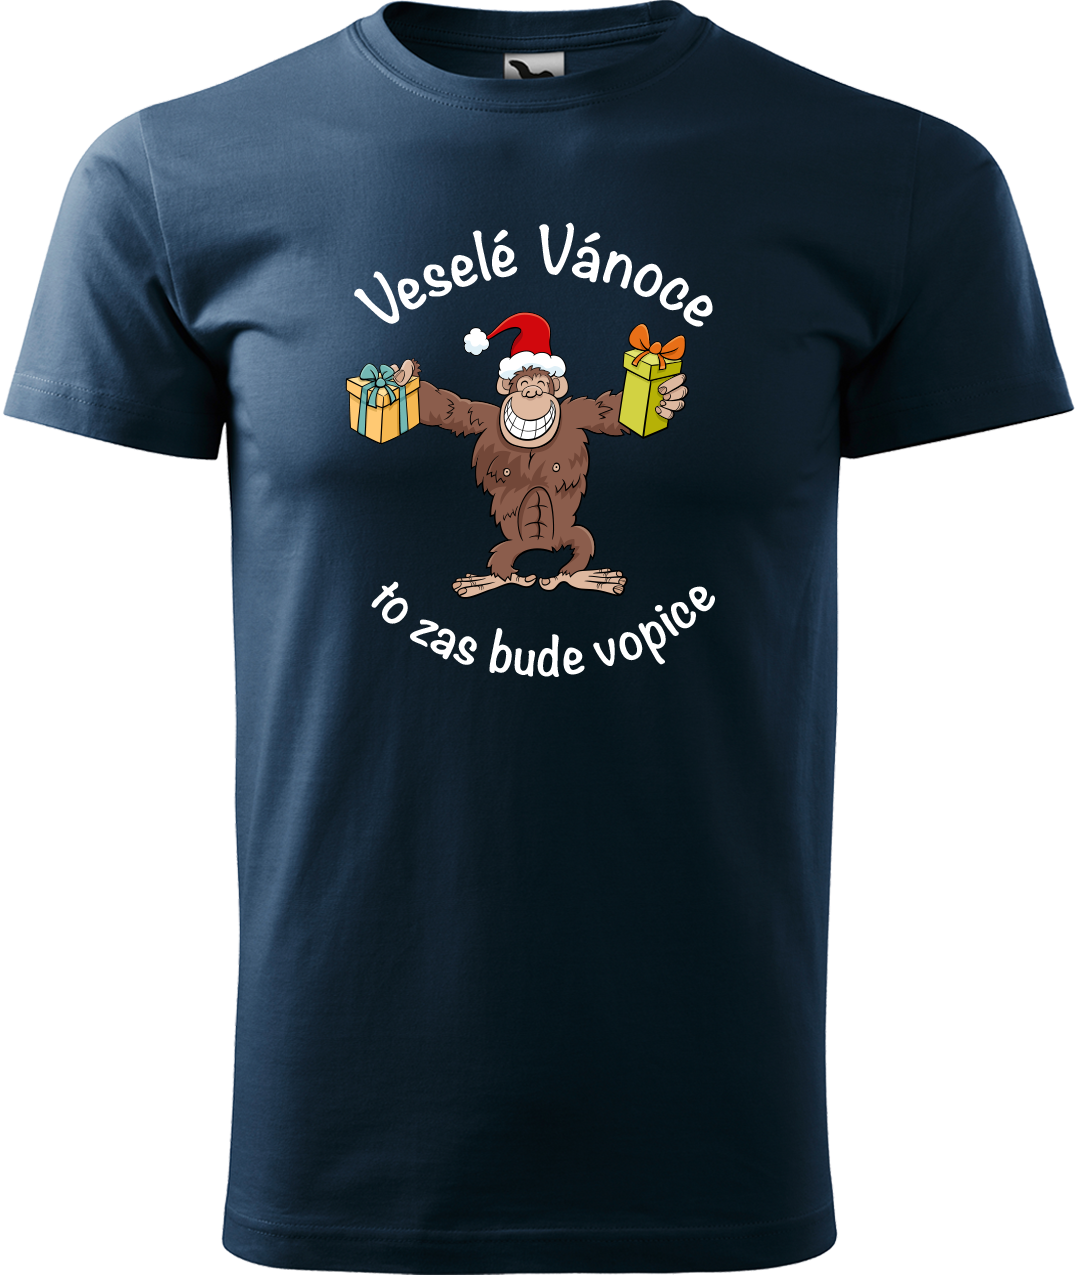 Pánské vánoční tričko - Veselé Vánoce to zas bude vopice (hnědý opičák) Velikost: L, Barva: Námořní modrá (02)